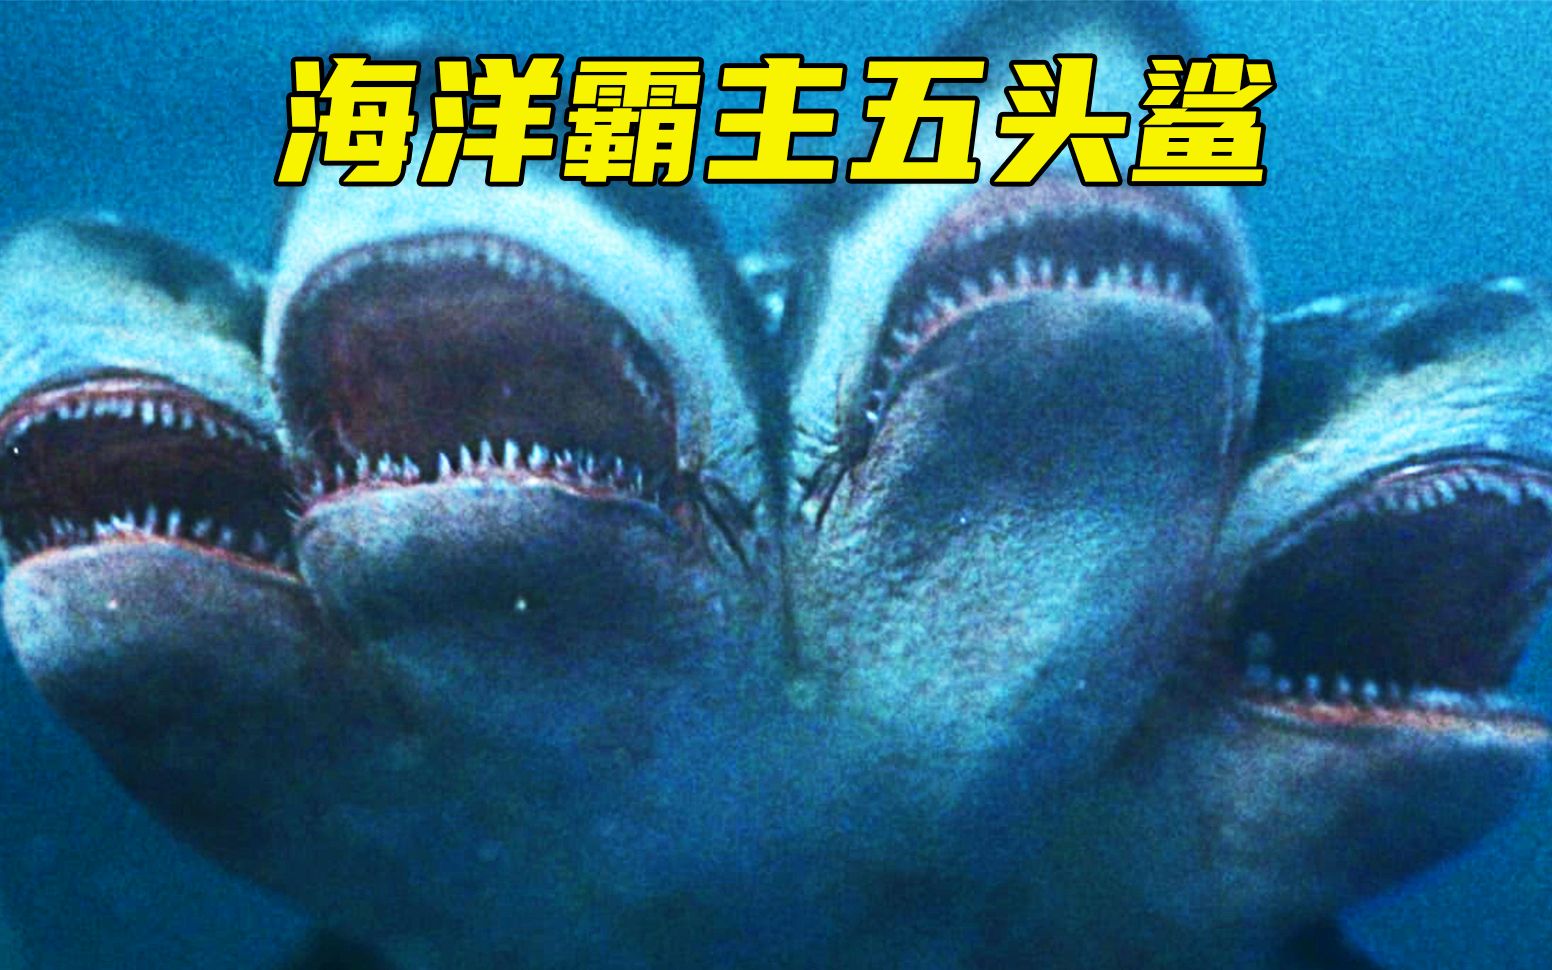 海洋霸主五头鲨凶猛无比